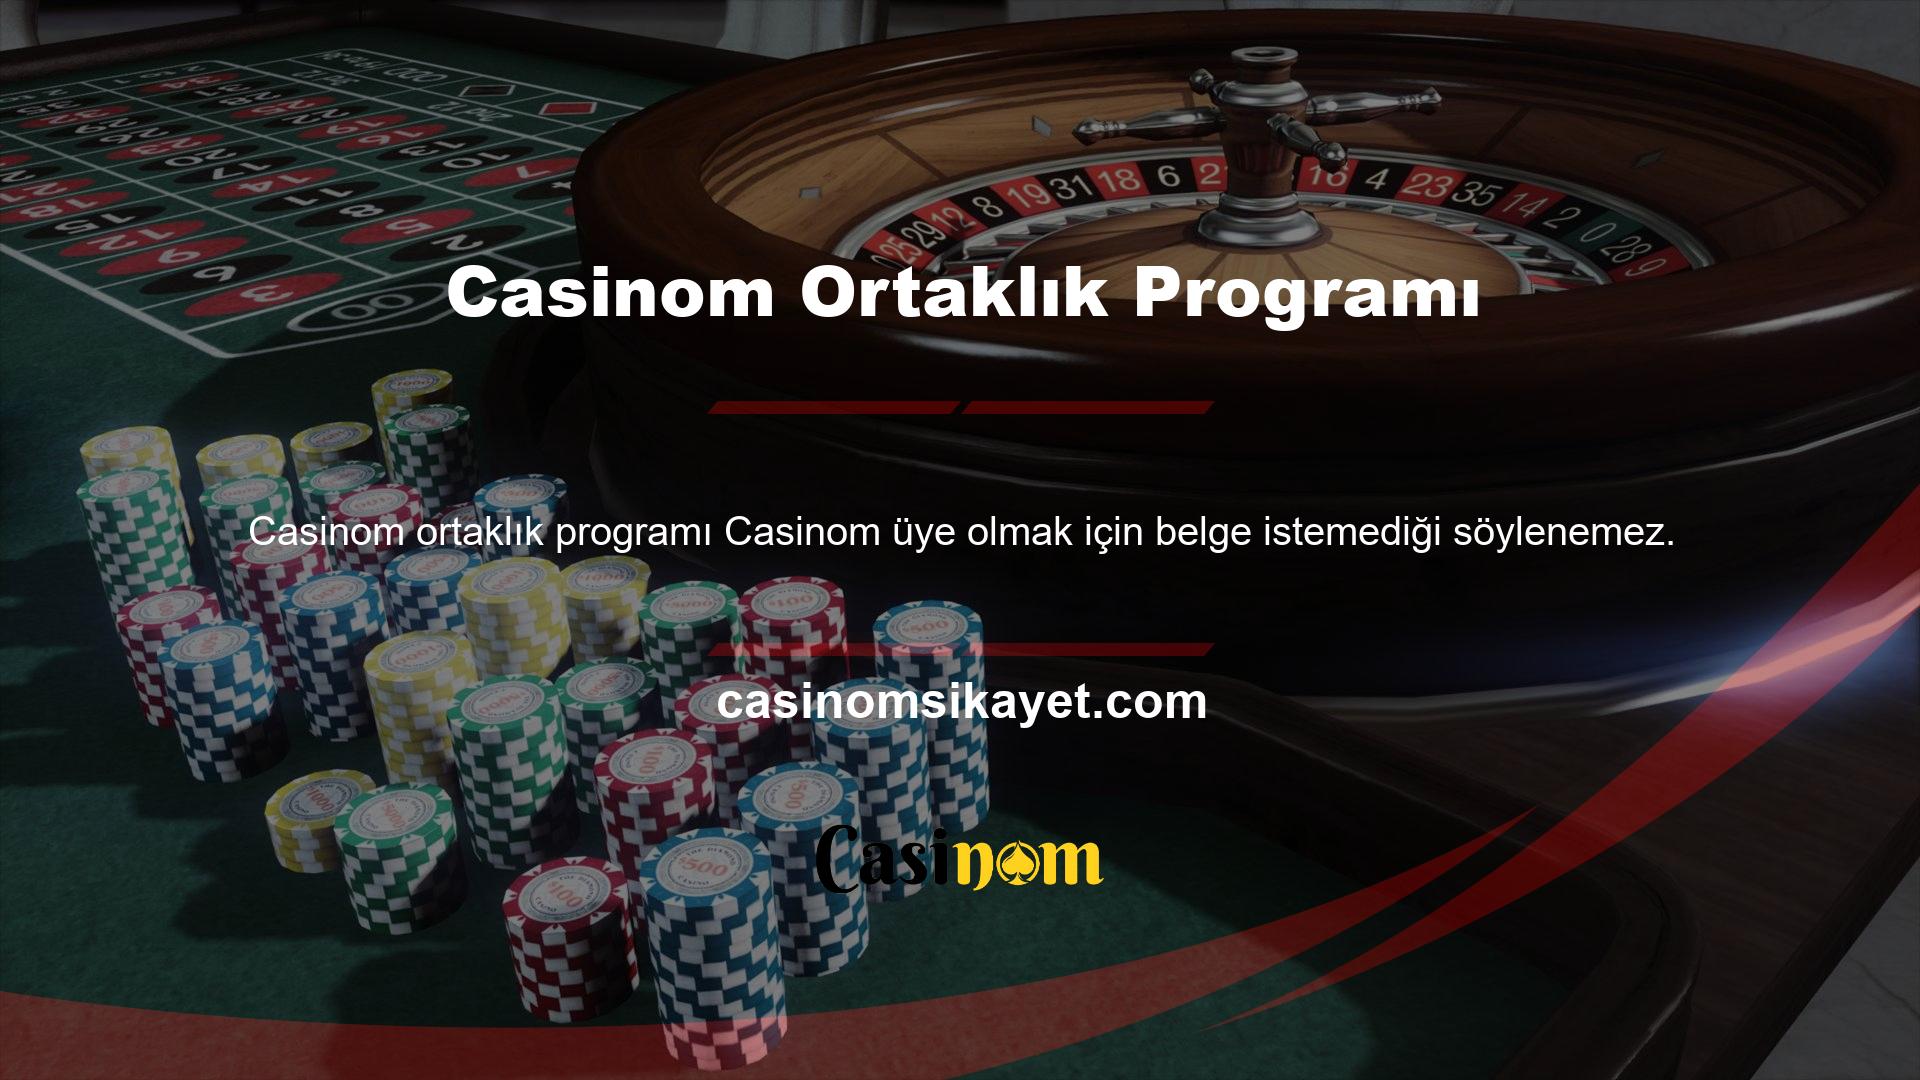 Tüm casino sitelerinin belgesiz üyelikleri vardır, ancak ilk kez yatırım yapanlar bile kanıt sağlamalıdır